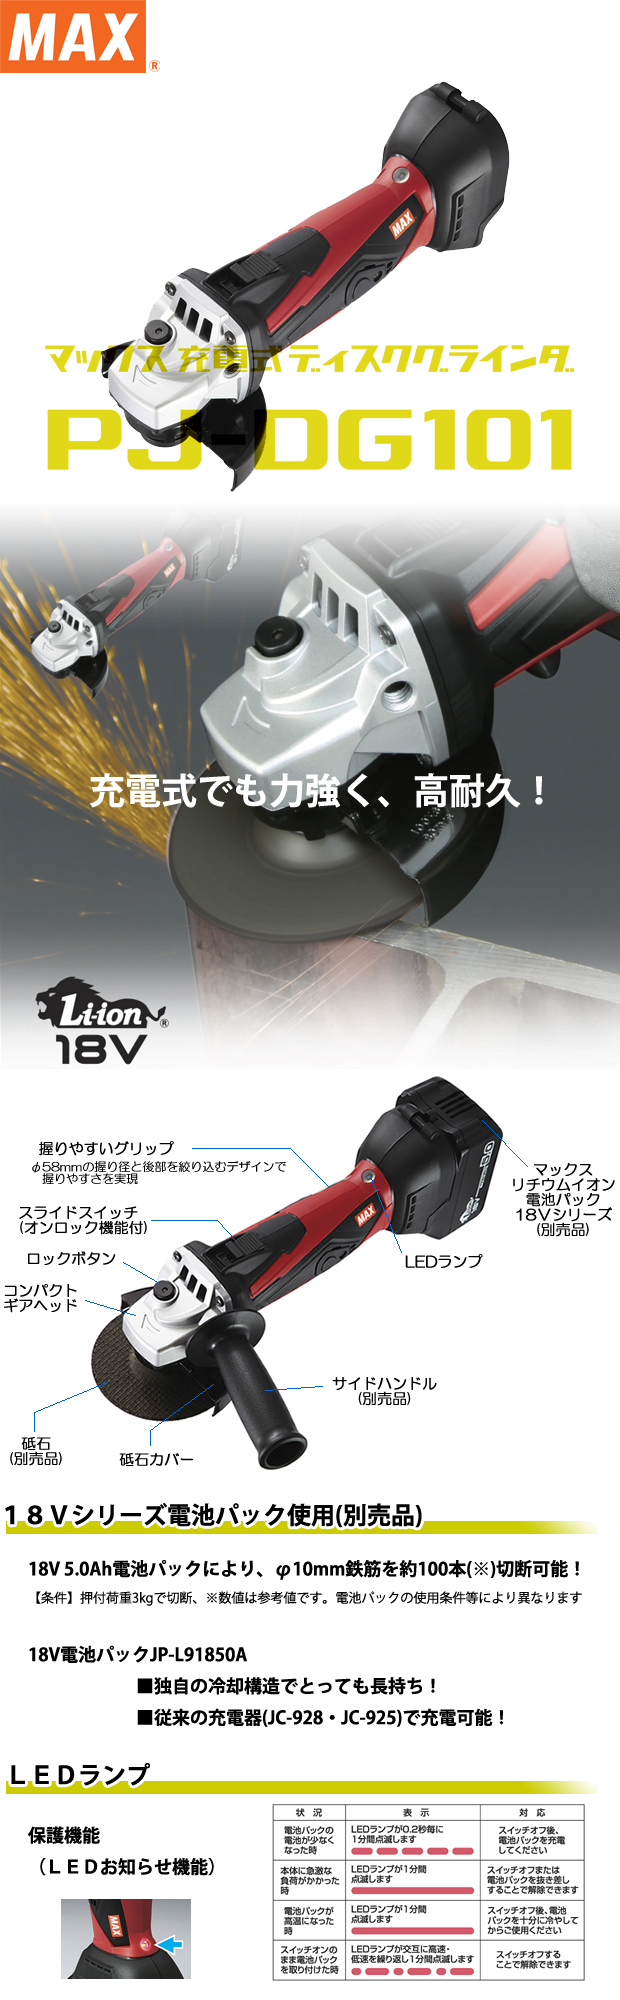 マックス 18V充電式ディスクグラインダ PJ-DG101 電動工具・エアー工具・大工道具（電動工具＞グラインダ）